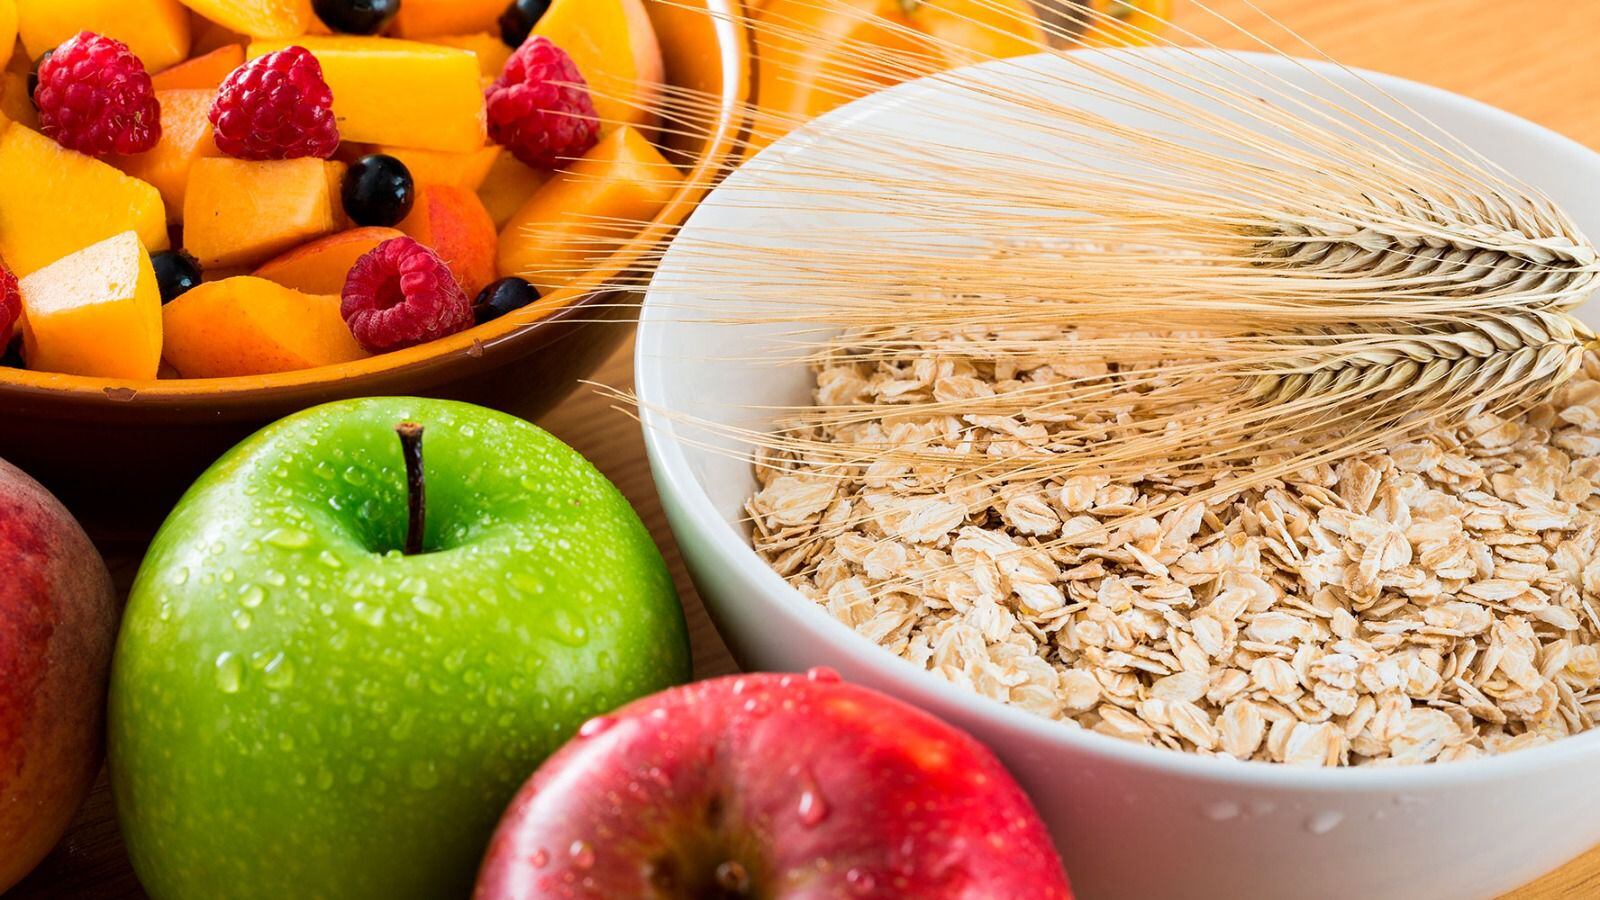 Alimentos como las manzanas y las frambuesas se pueden agregar a la avena. (Foto: Shutterstock)